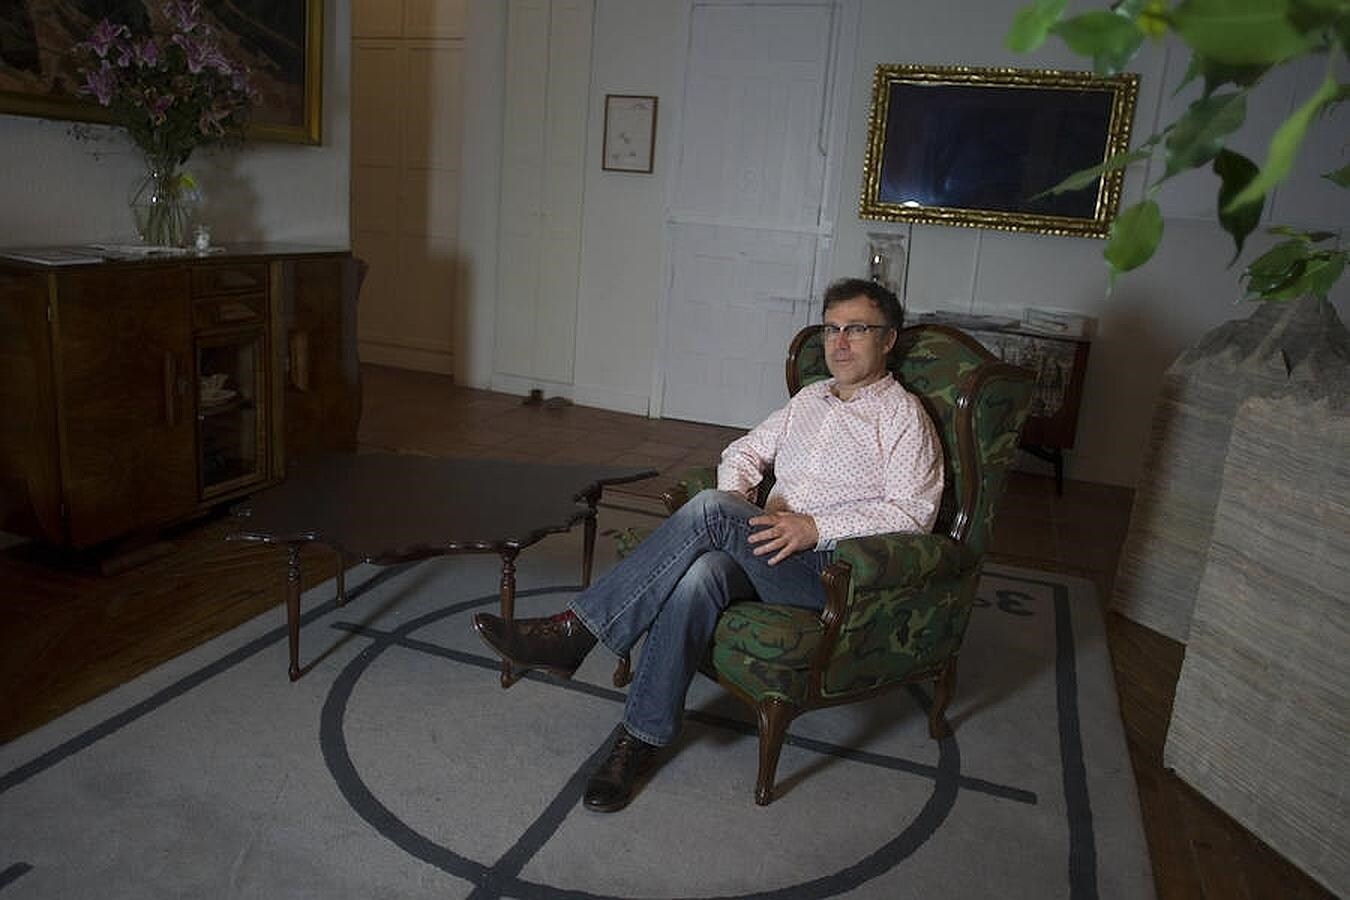 El artista descansa en su sofá de camuflaje, junto a una de sus mesas con la silueta de la Península Ibérica y una de sus alfombras